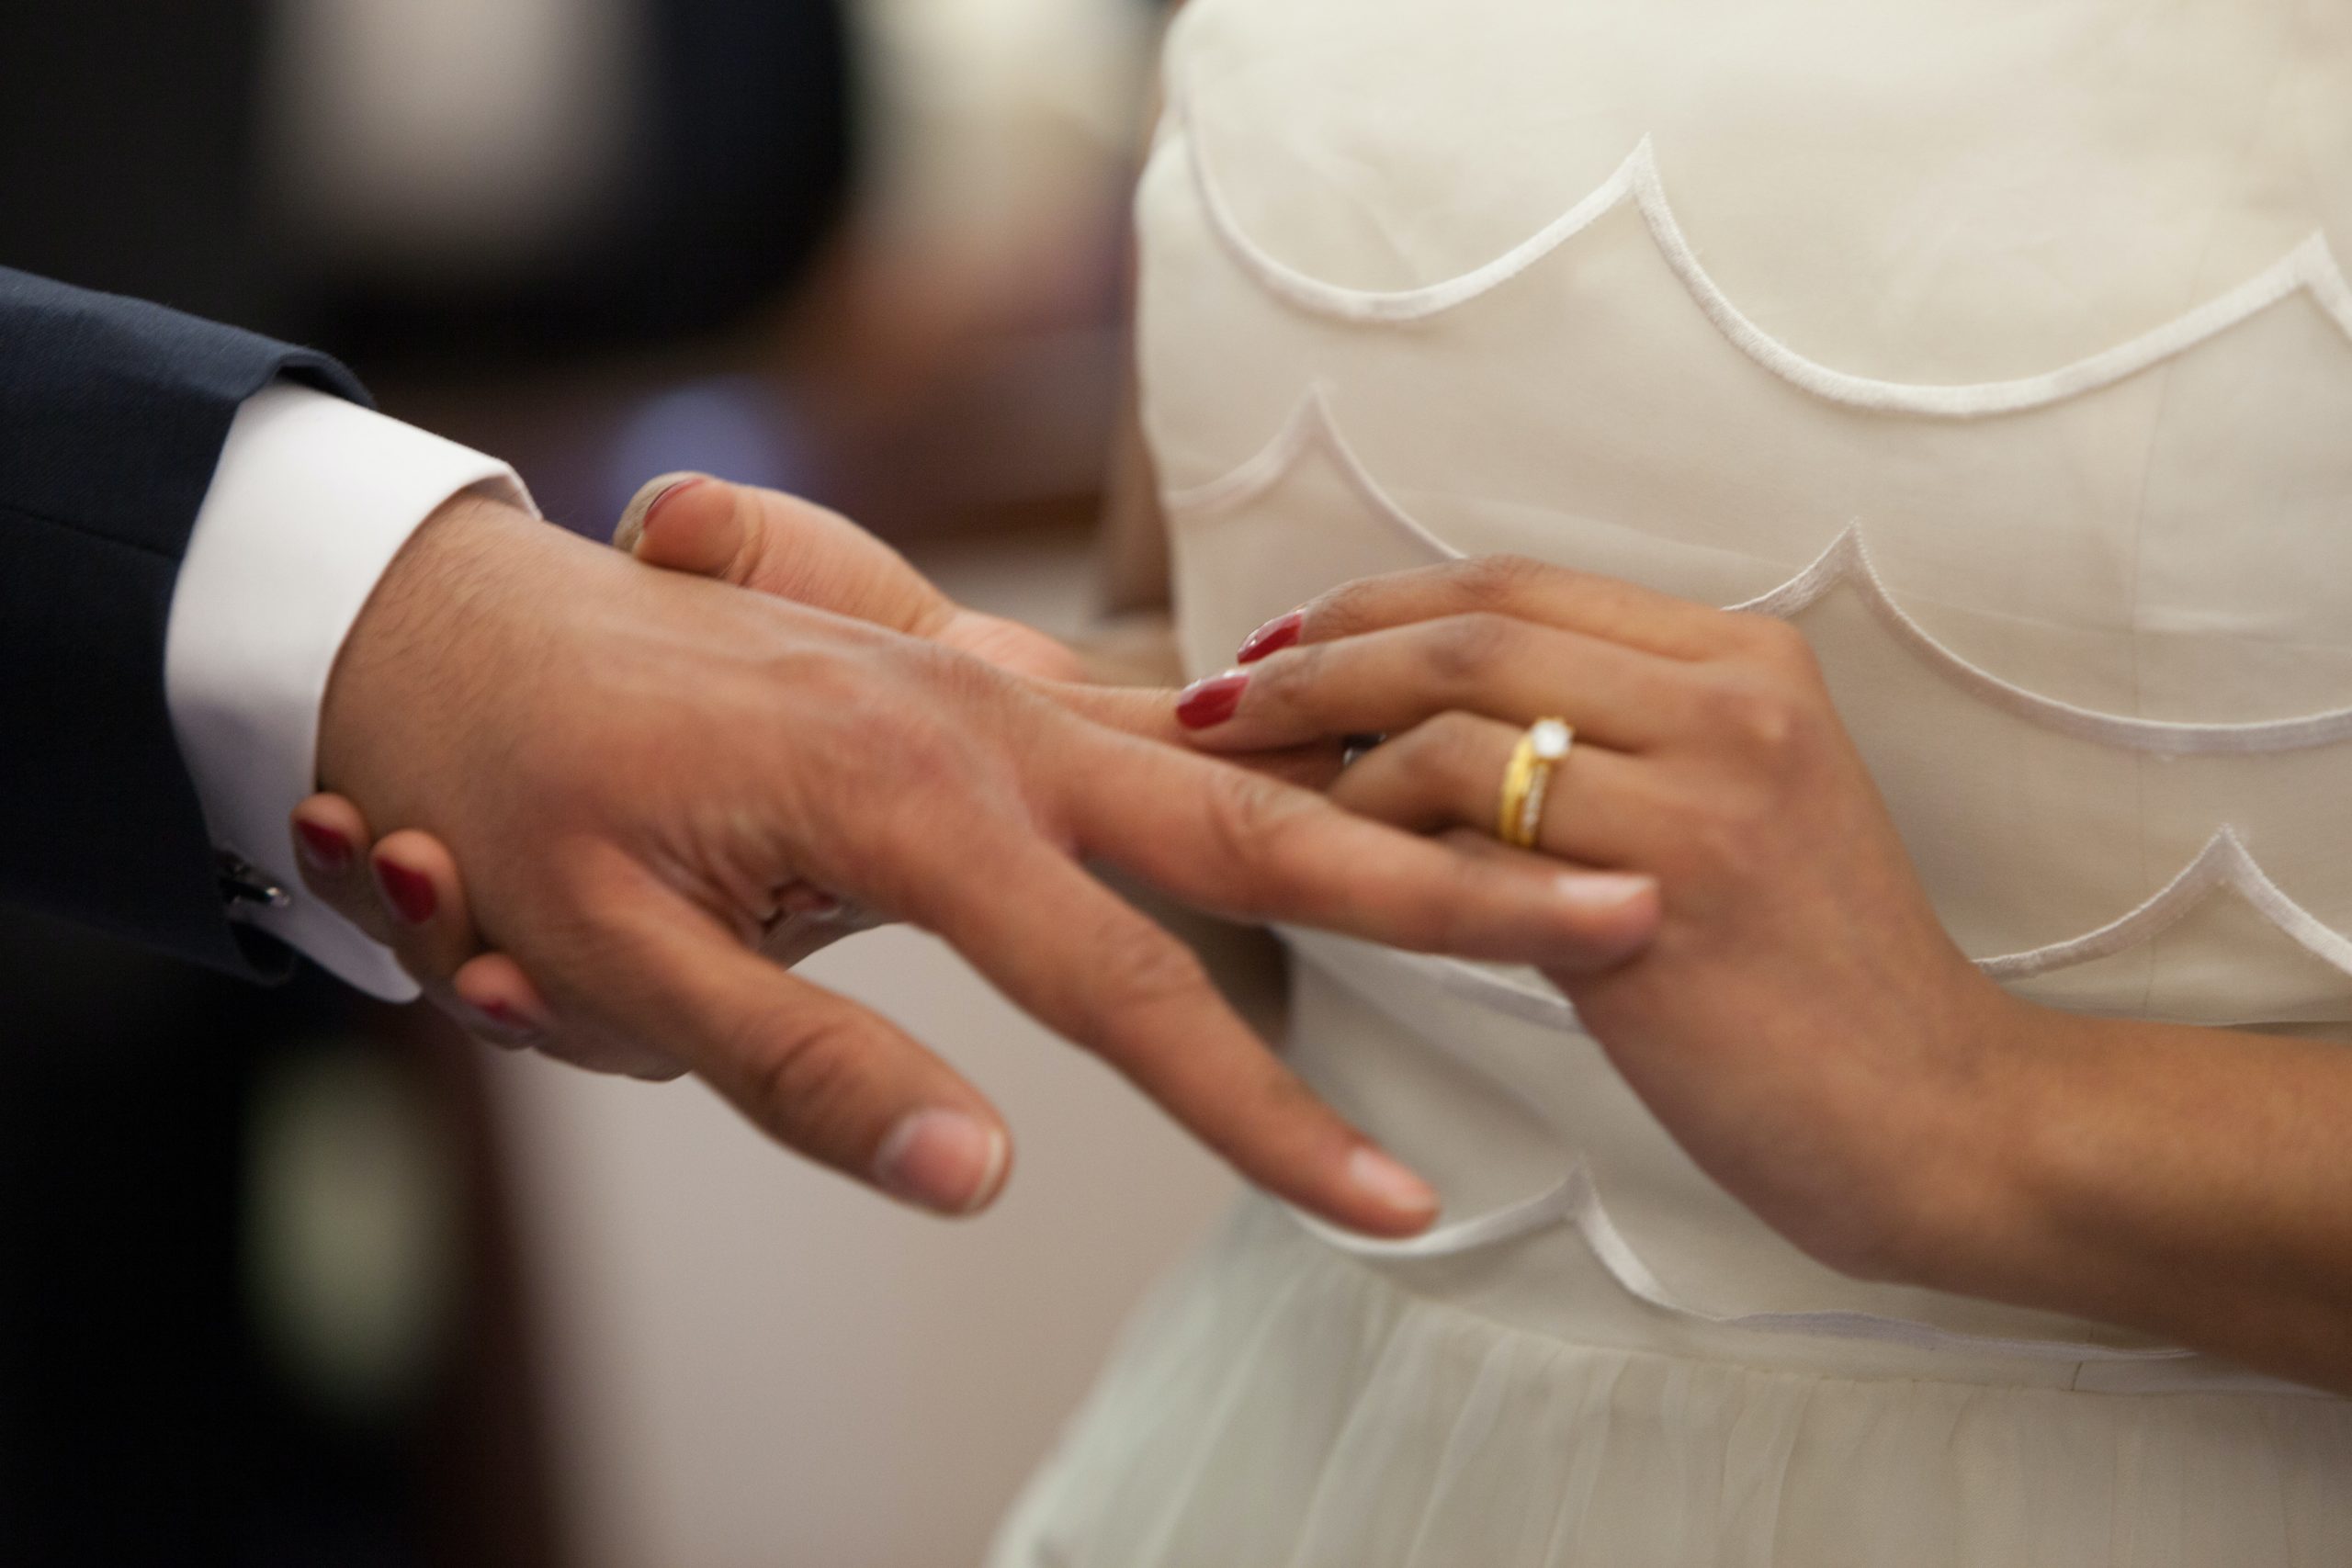 Le nozze meglio della convivenza, dice il Wall Street Journal